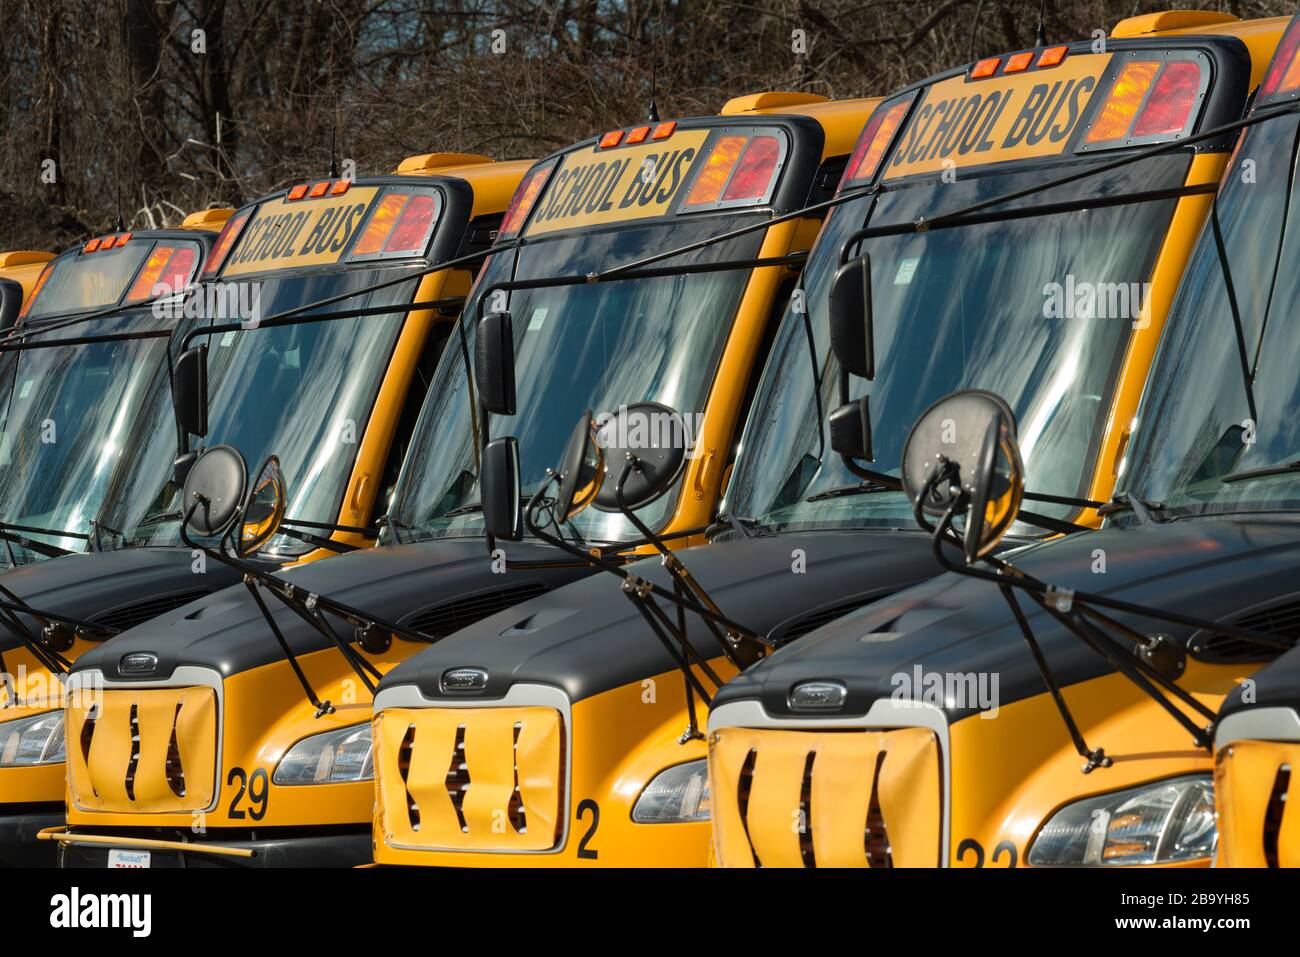 Coronavirus, Idle School Buses, Lexington, Massachusetts, USA. März 2020. Mehr als 50 leerlaufende Schulbusse an einem Wochentag am Nachmittag. Lexington, Bevölkerung über 30.000, in der Nähe von Boston, MA, hat die 11 öffentlichen Schulen der Stadt aufgrund des Coronavirus geschlossen, das die 7.000 Schüler des Schulbezirks betrifft. Stockfoto